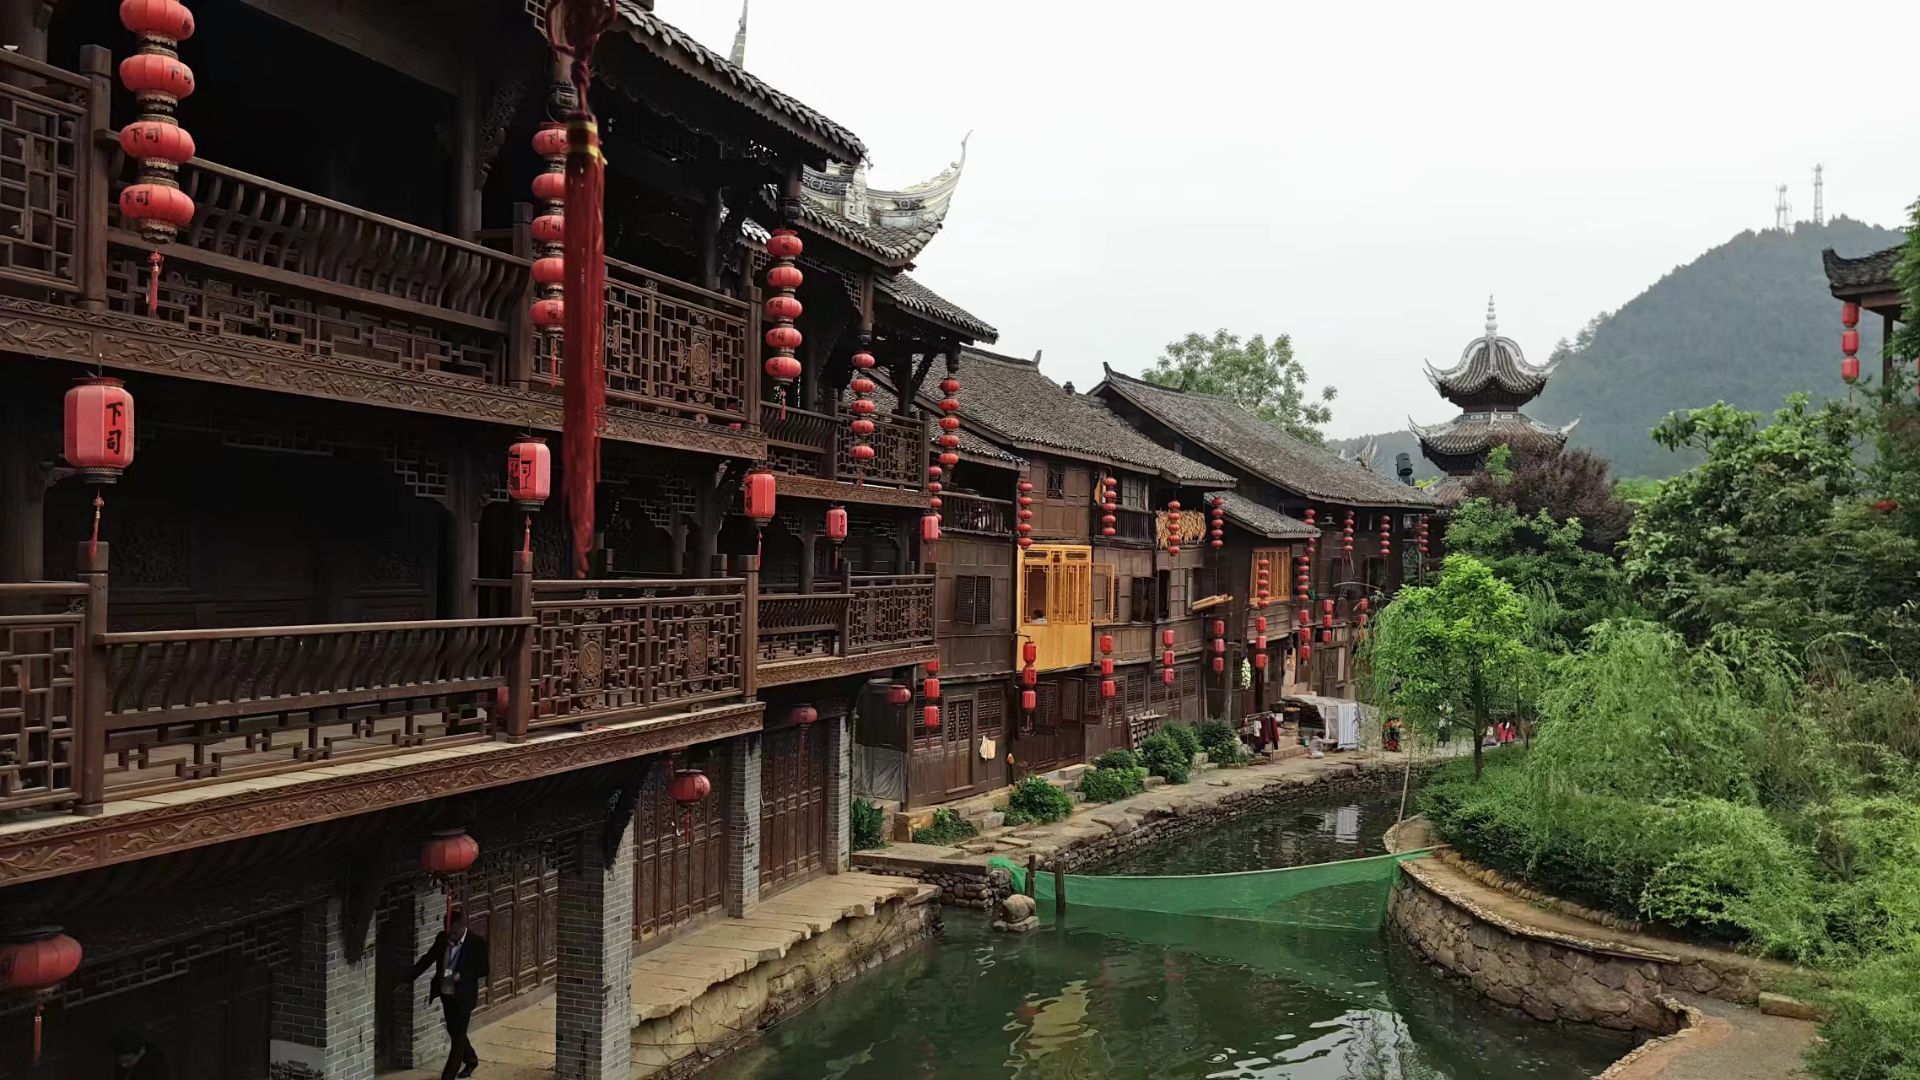 贵州下司古镇被人誉为“小上海”、有“清水江上的明珠”之美称